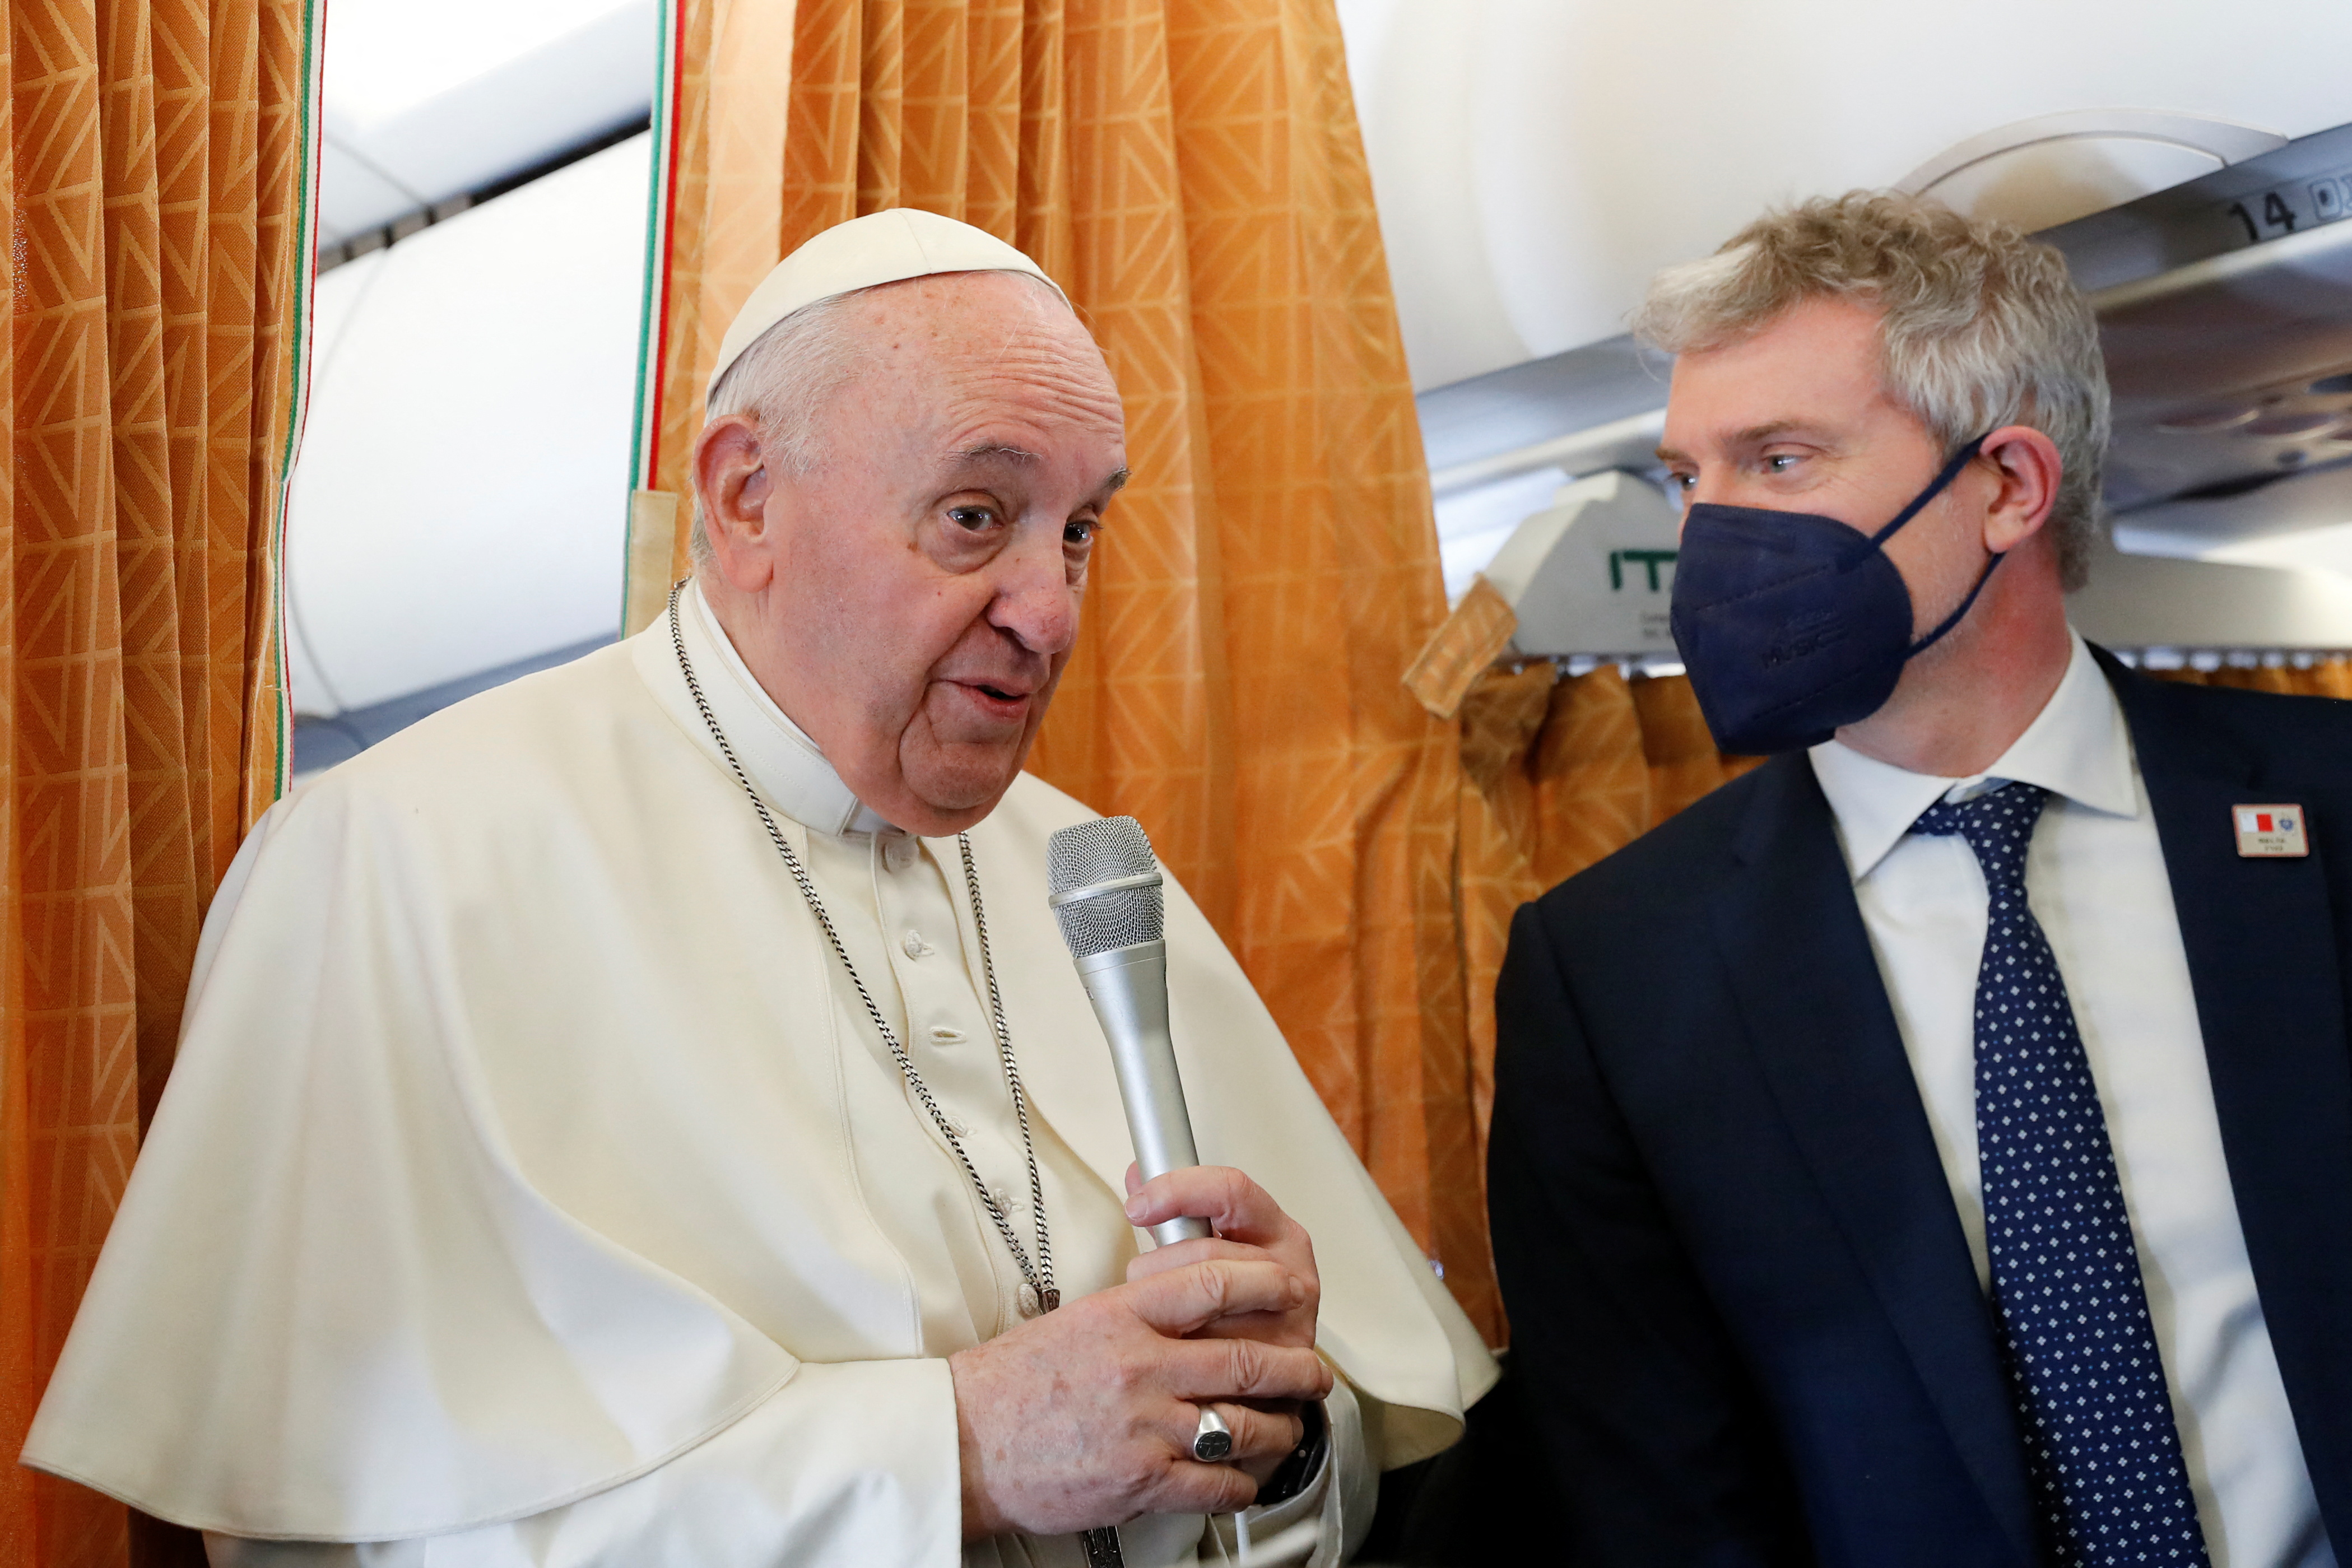 El Papa hablando en el aviin rumbo a Malta (REUTERS / Remo Casilli)